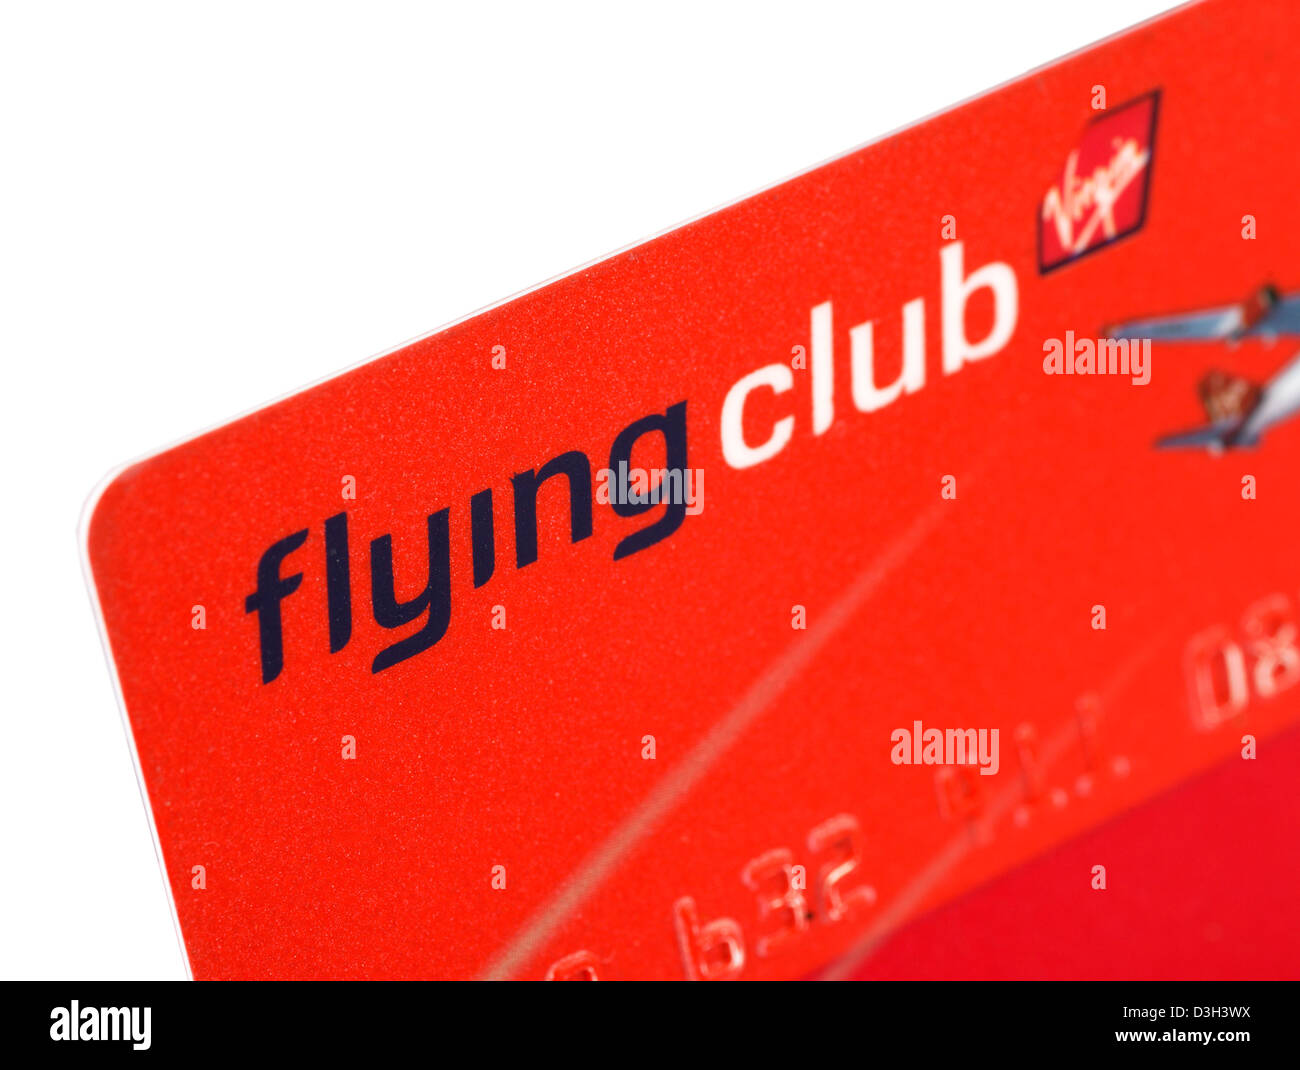 Virgin Atlantic Airways Flying Club carte de voyageur fréquent Banque D'Images